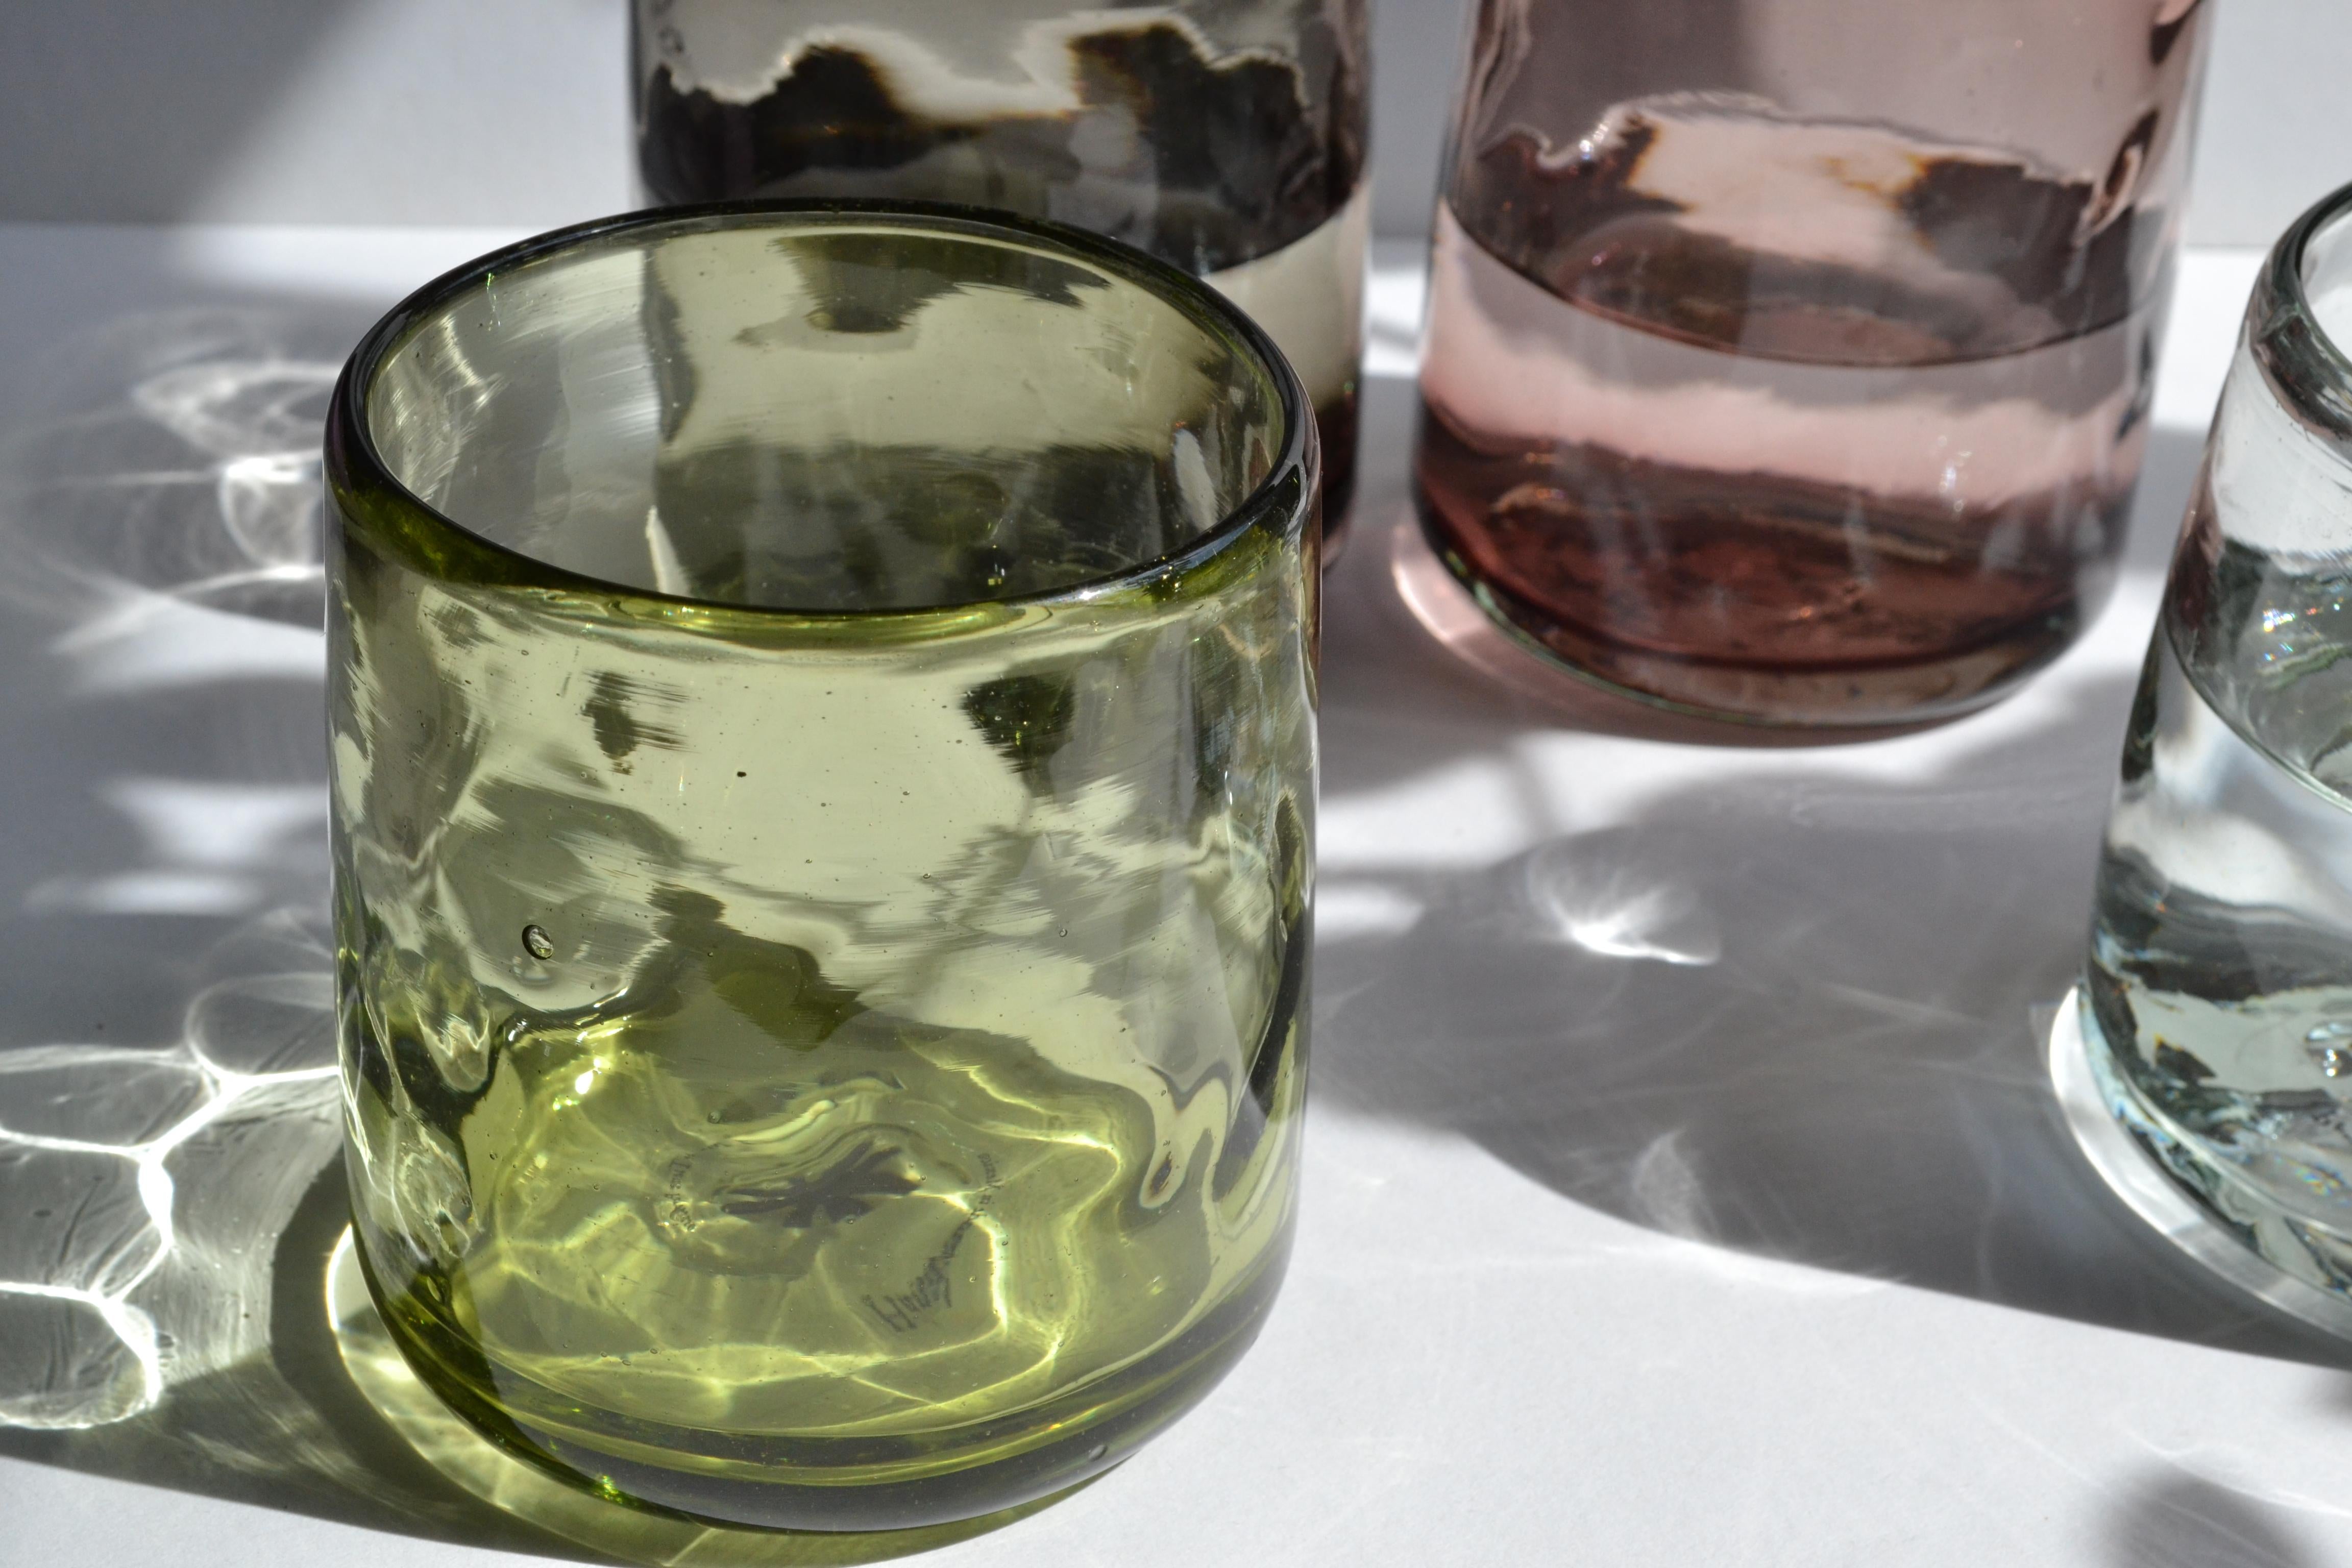 White lights est un ensemble de verres transparents soufflés à la main dont la forme organique s'inspire de la surface naturelle de la terre.

Nightlights of Mexico City collection de lunettes classiques inspirées de la vie nocturne de l'âge d'or